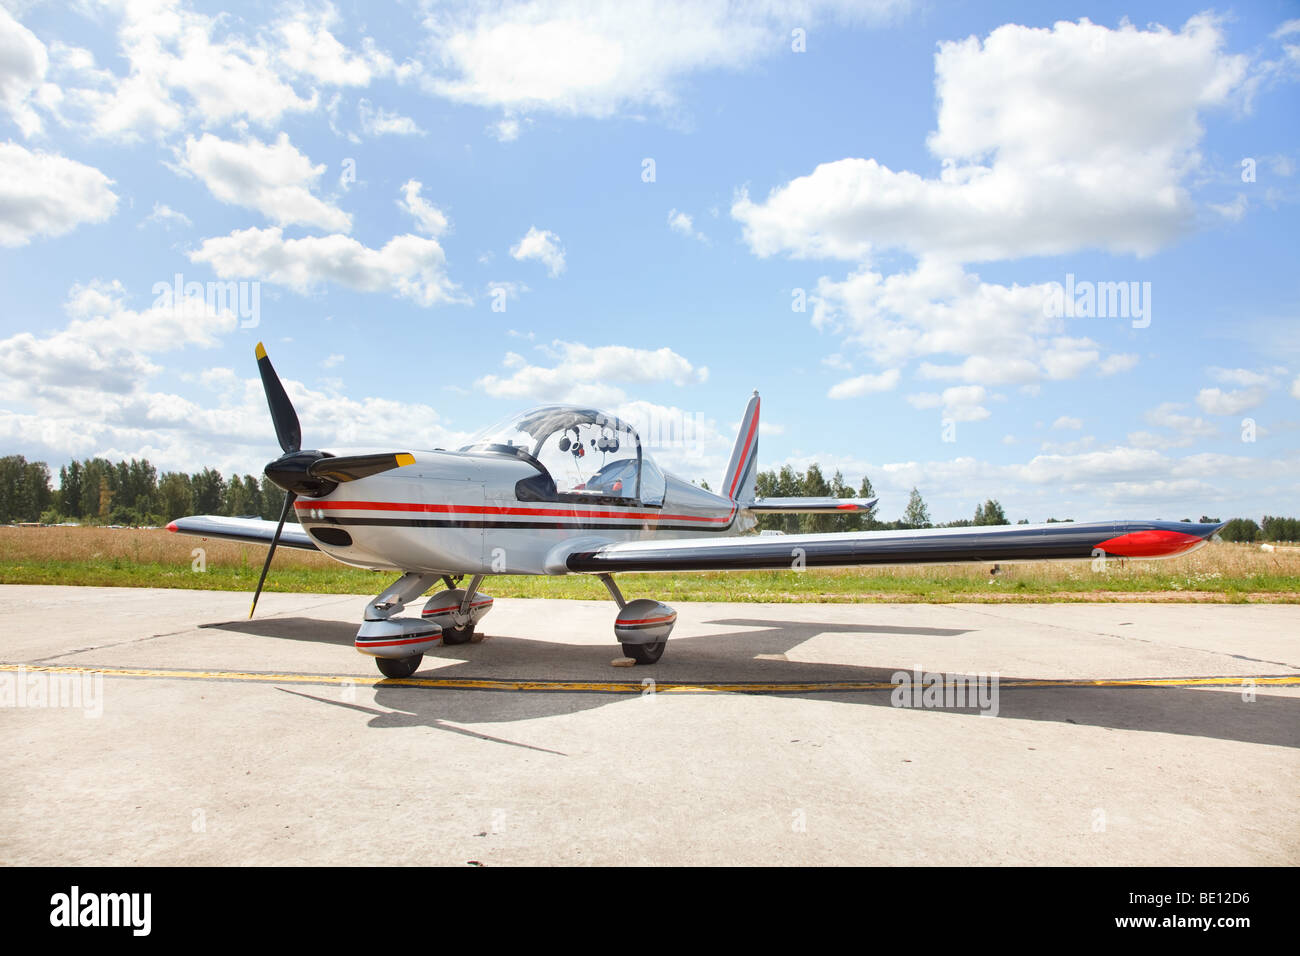 Kleine leichte private Flugzeug auf Landebahn in Flugplatz steht Stockfoto